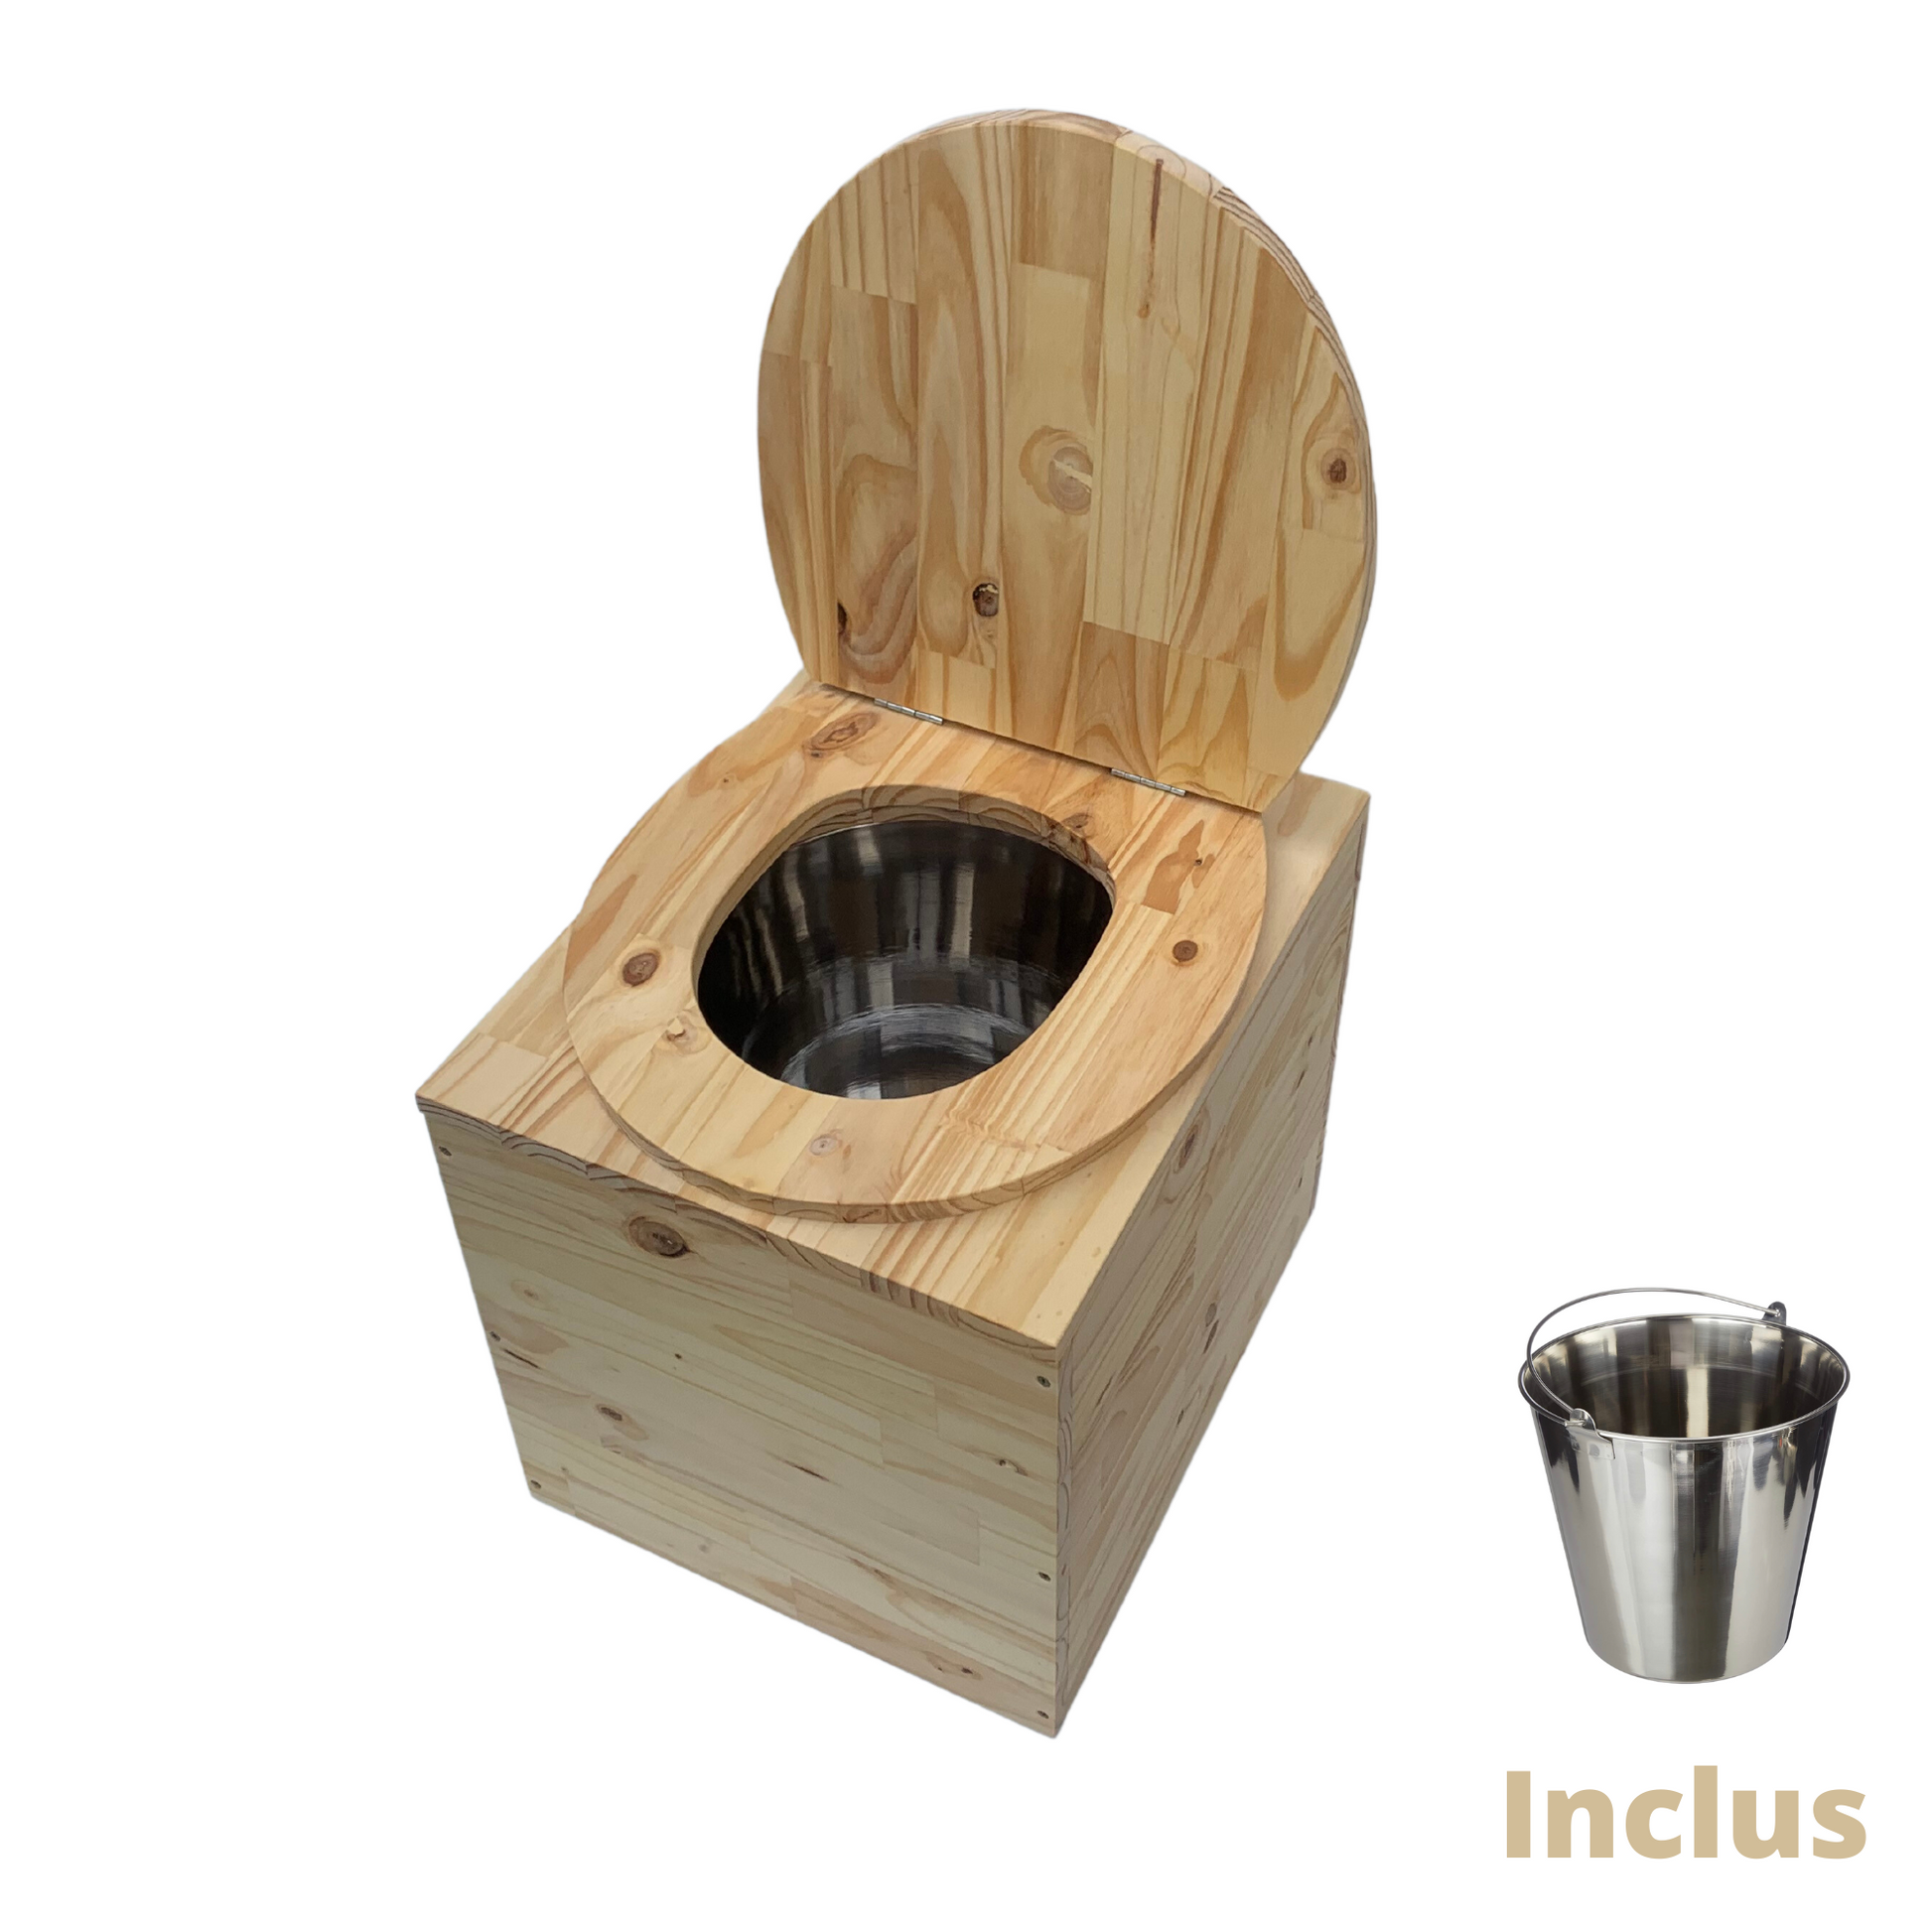 Toilette sèche compacte en bois massif - Seau inox – Alfortbois